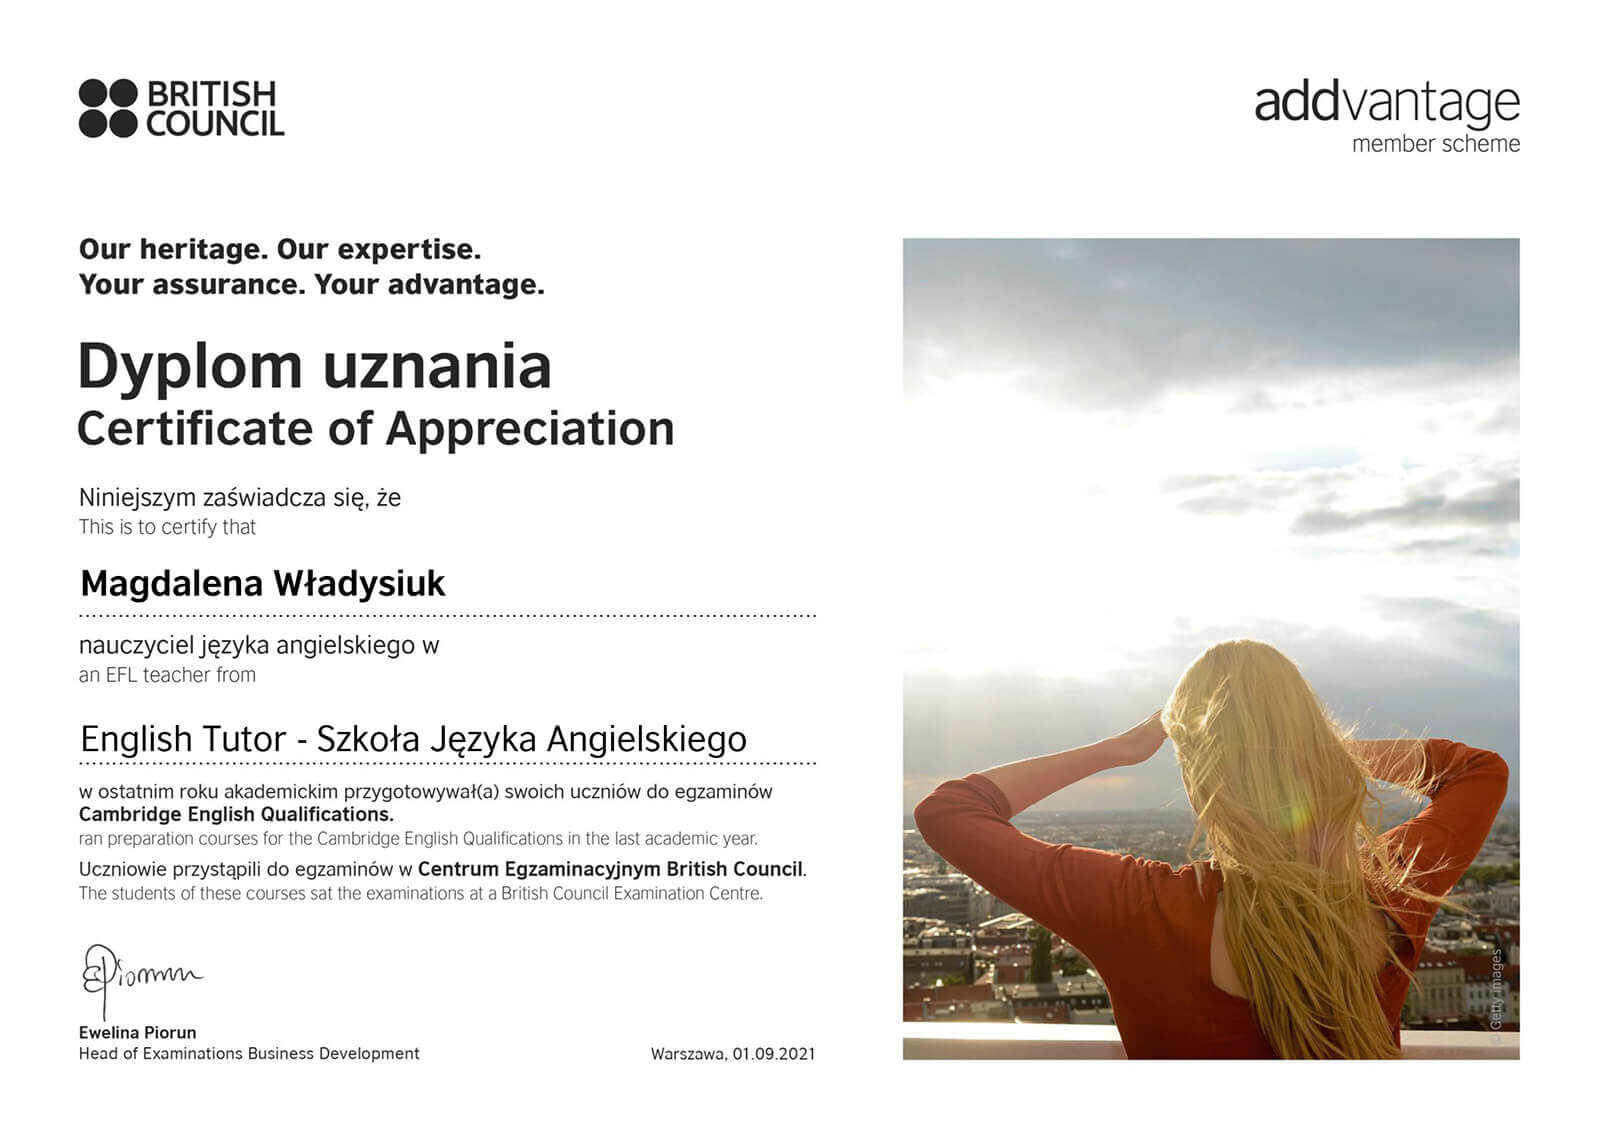 Dyplom uznania Magdalena Władysiuk